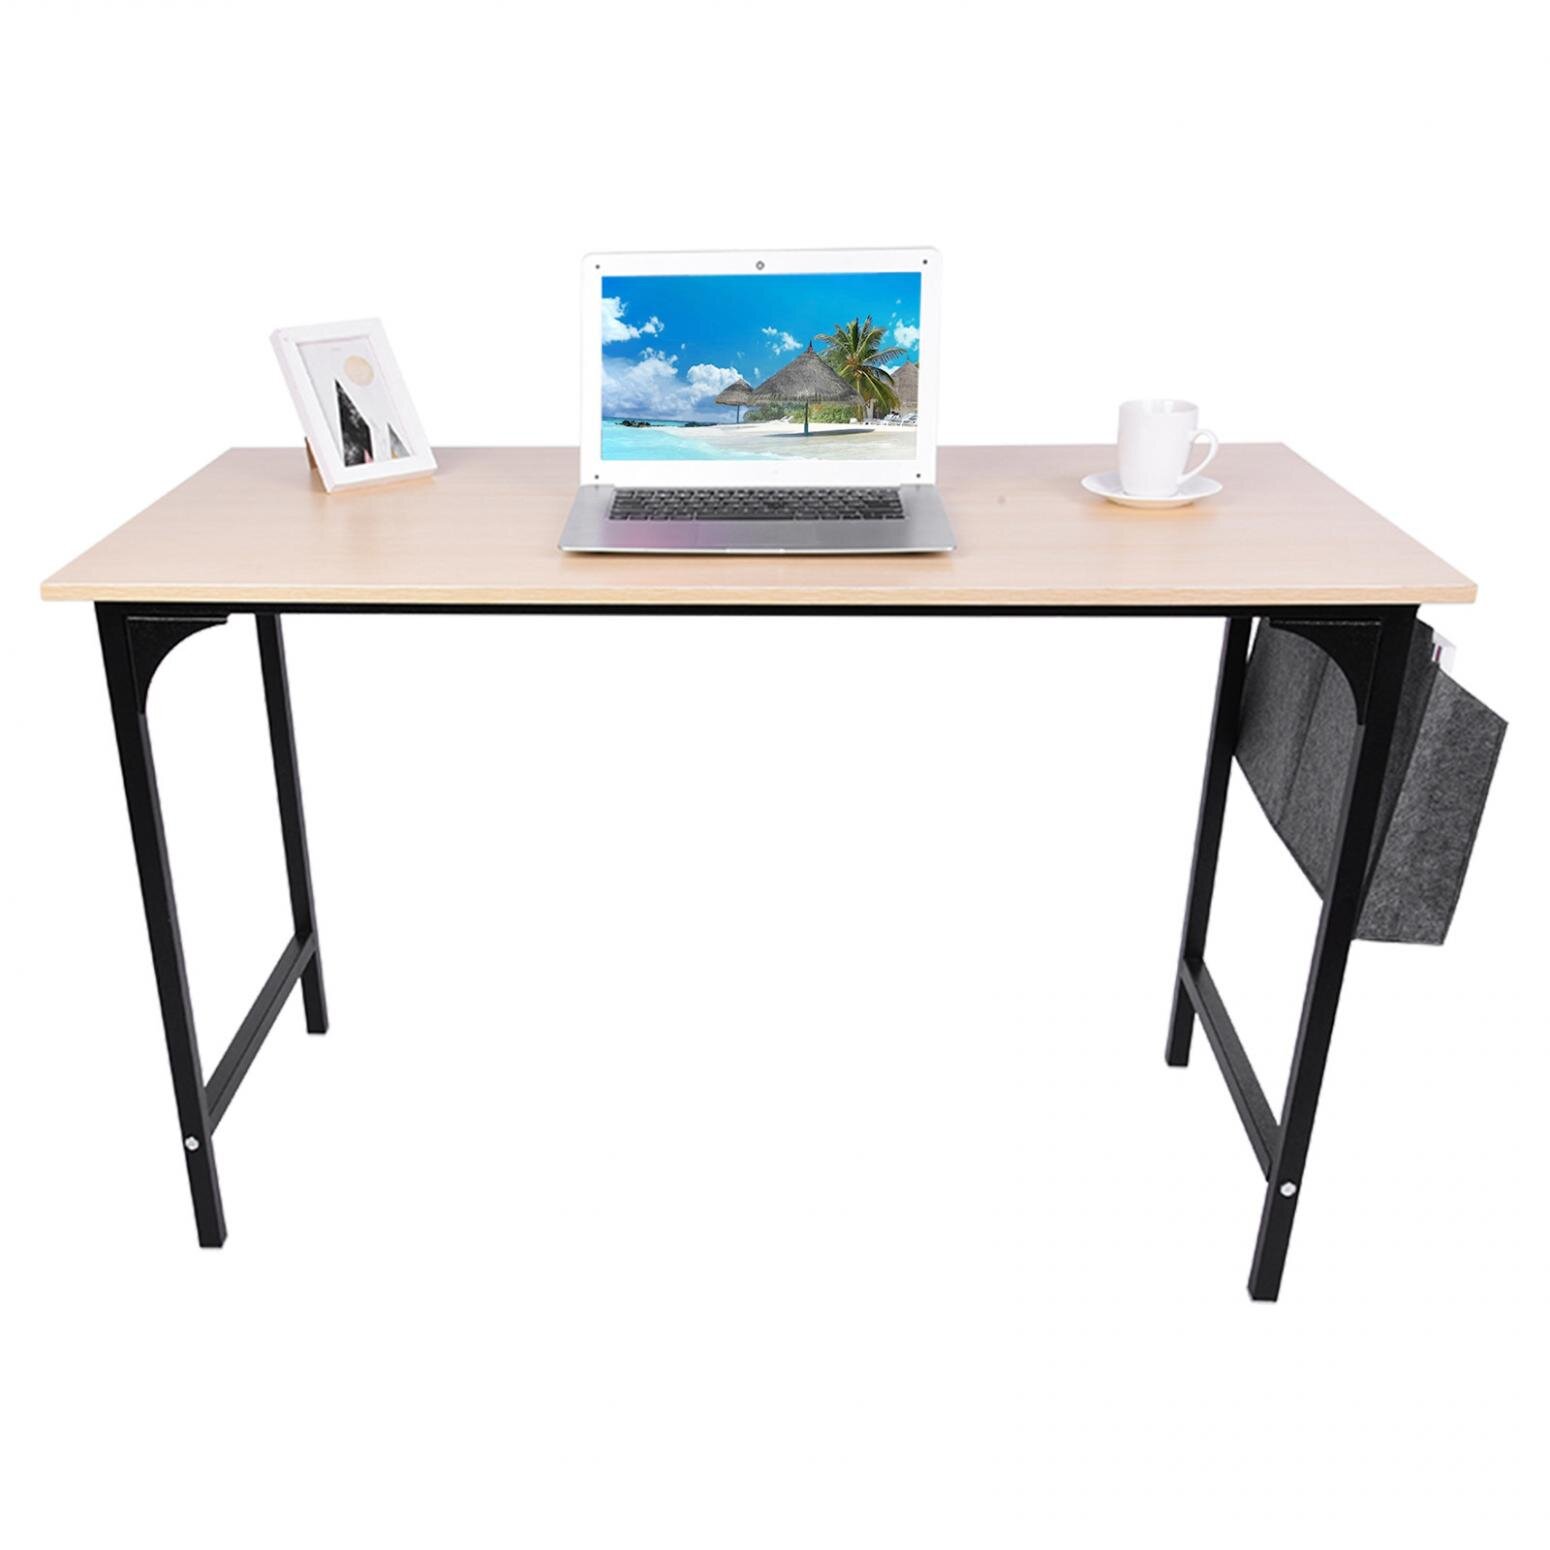 Details about   Home Use Office Desk Computer Desktop Bedroom Laptop Study Table Workstation US 